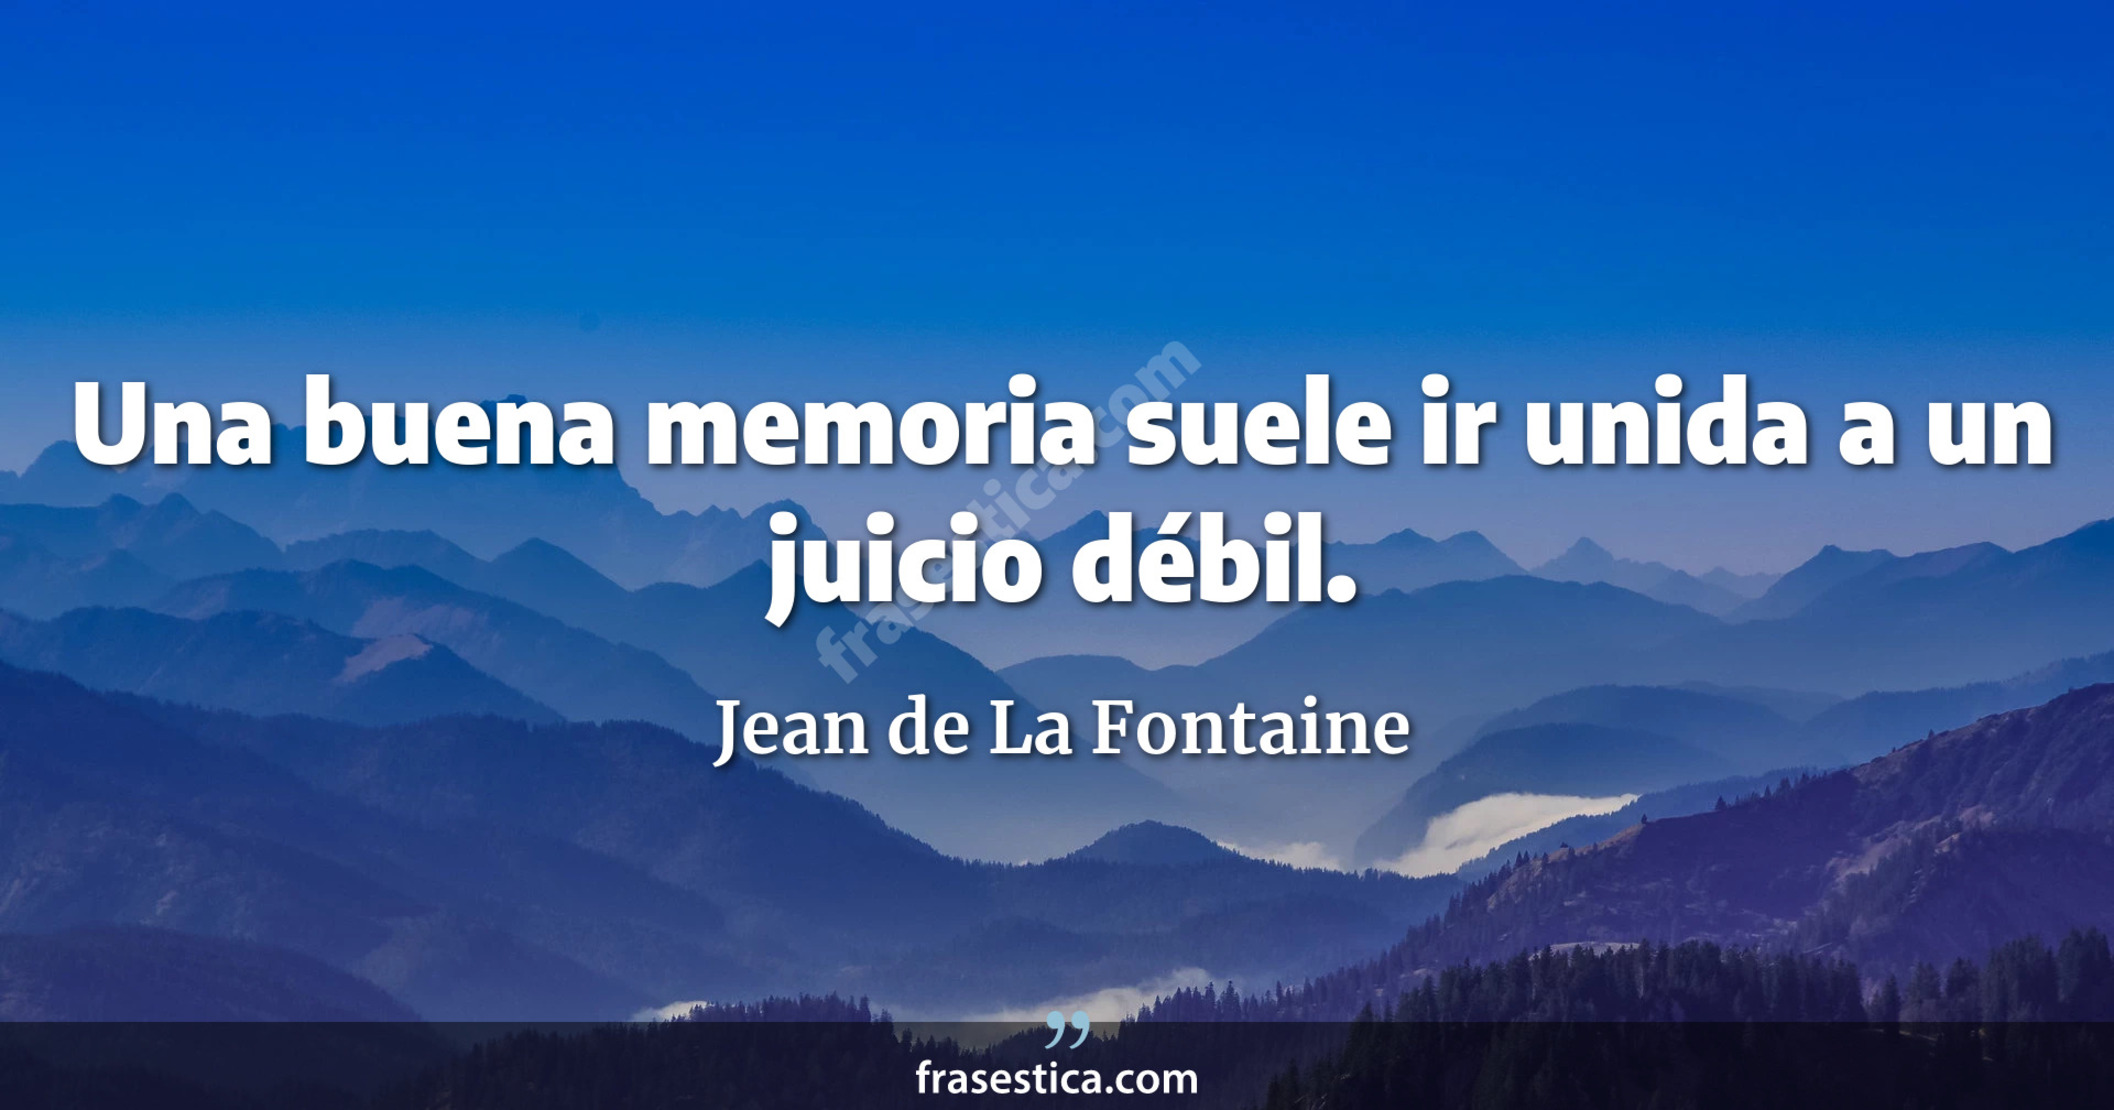 Una buena memoria suele ir unida a un juicio débil. - Jean de La Fontaine